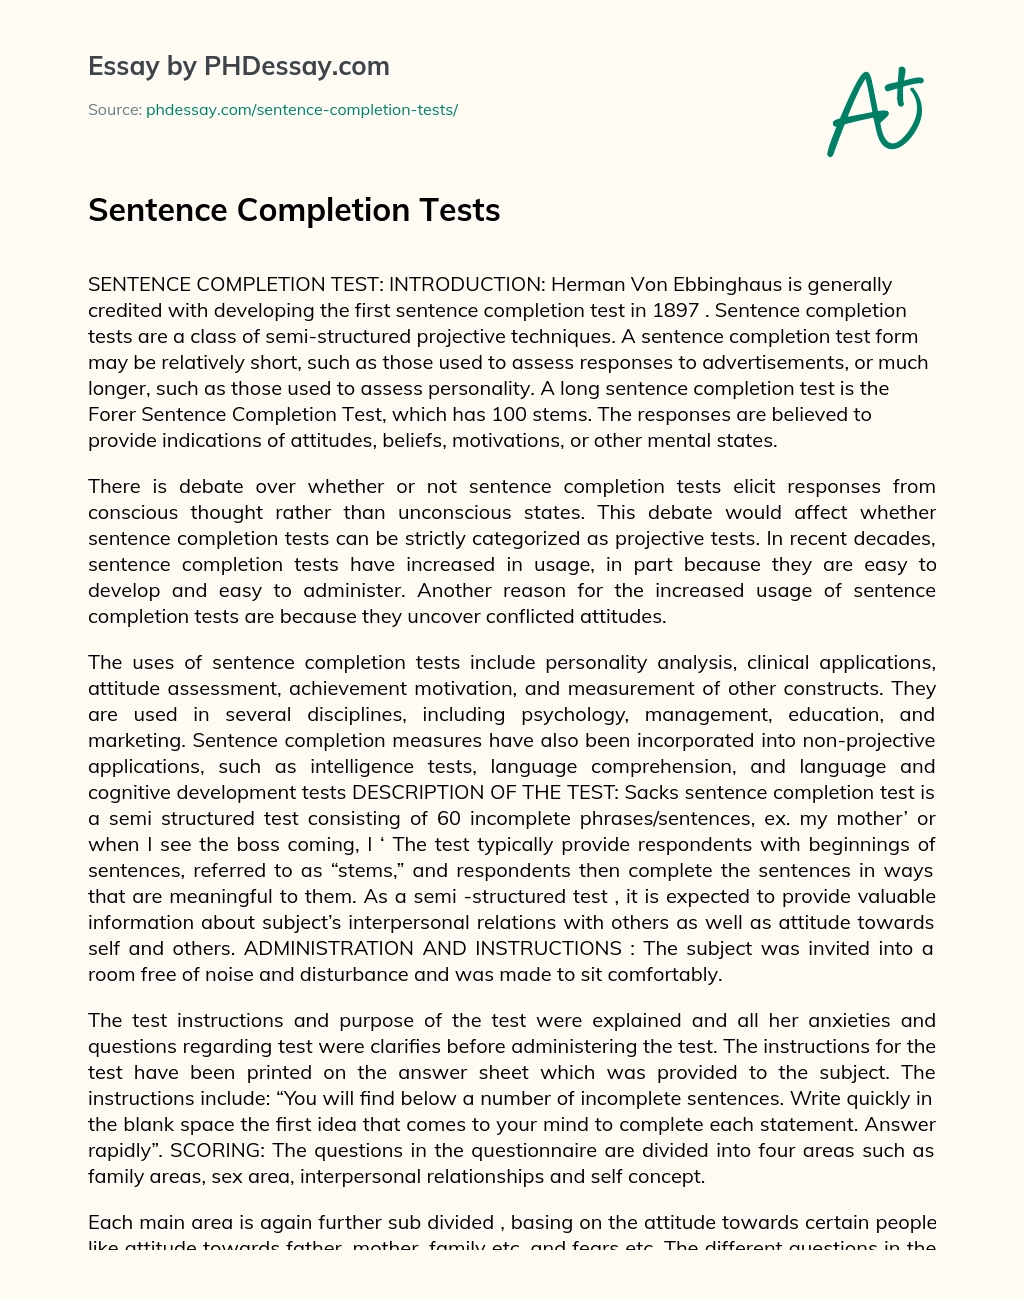 Sentence Completion Tests essay